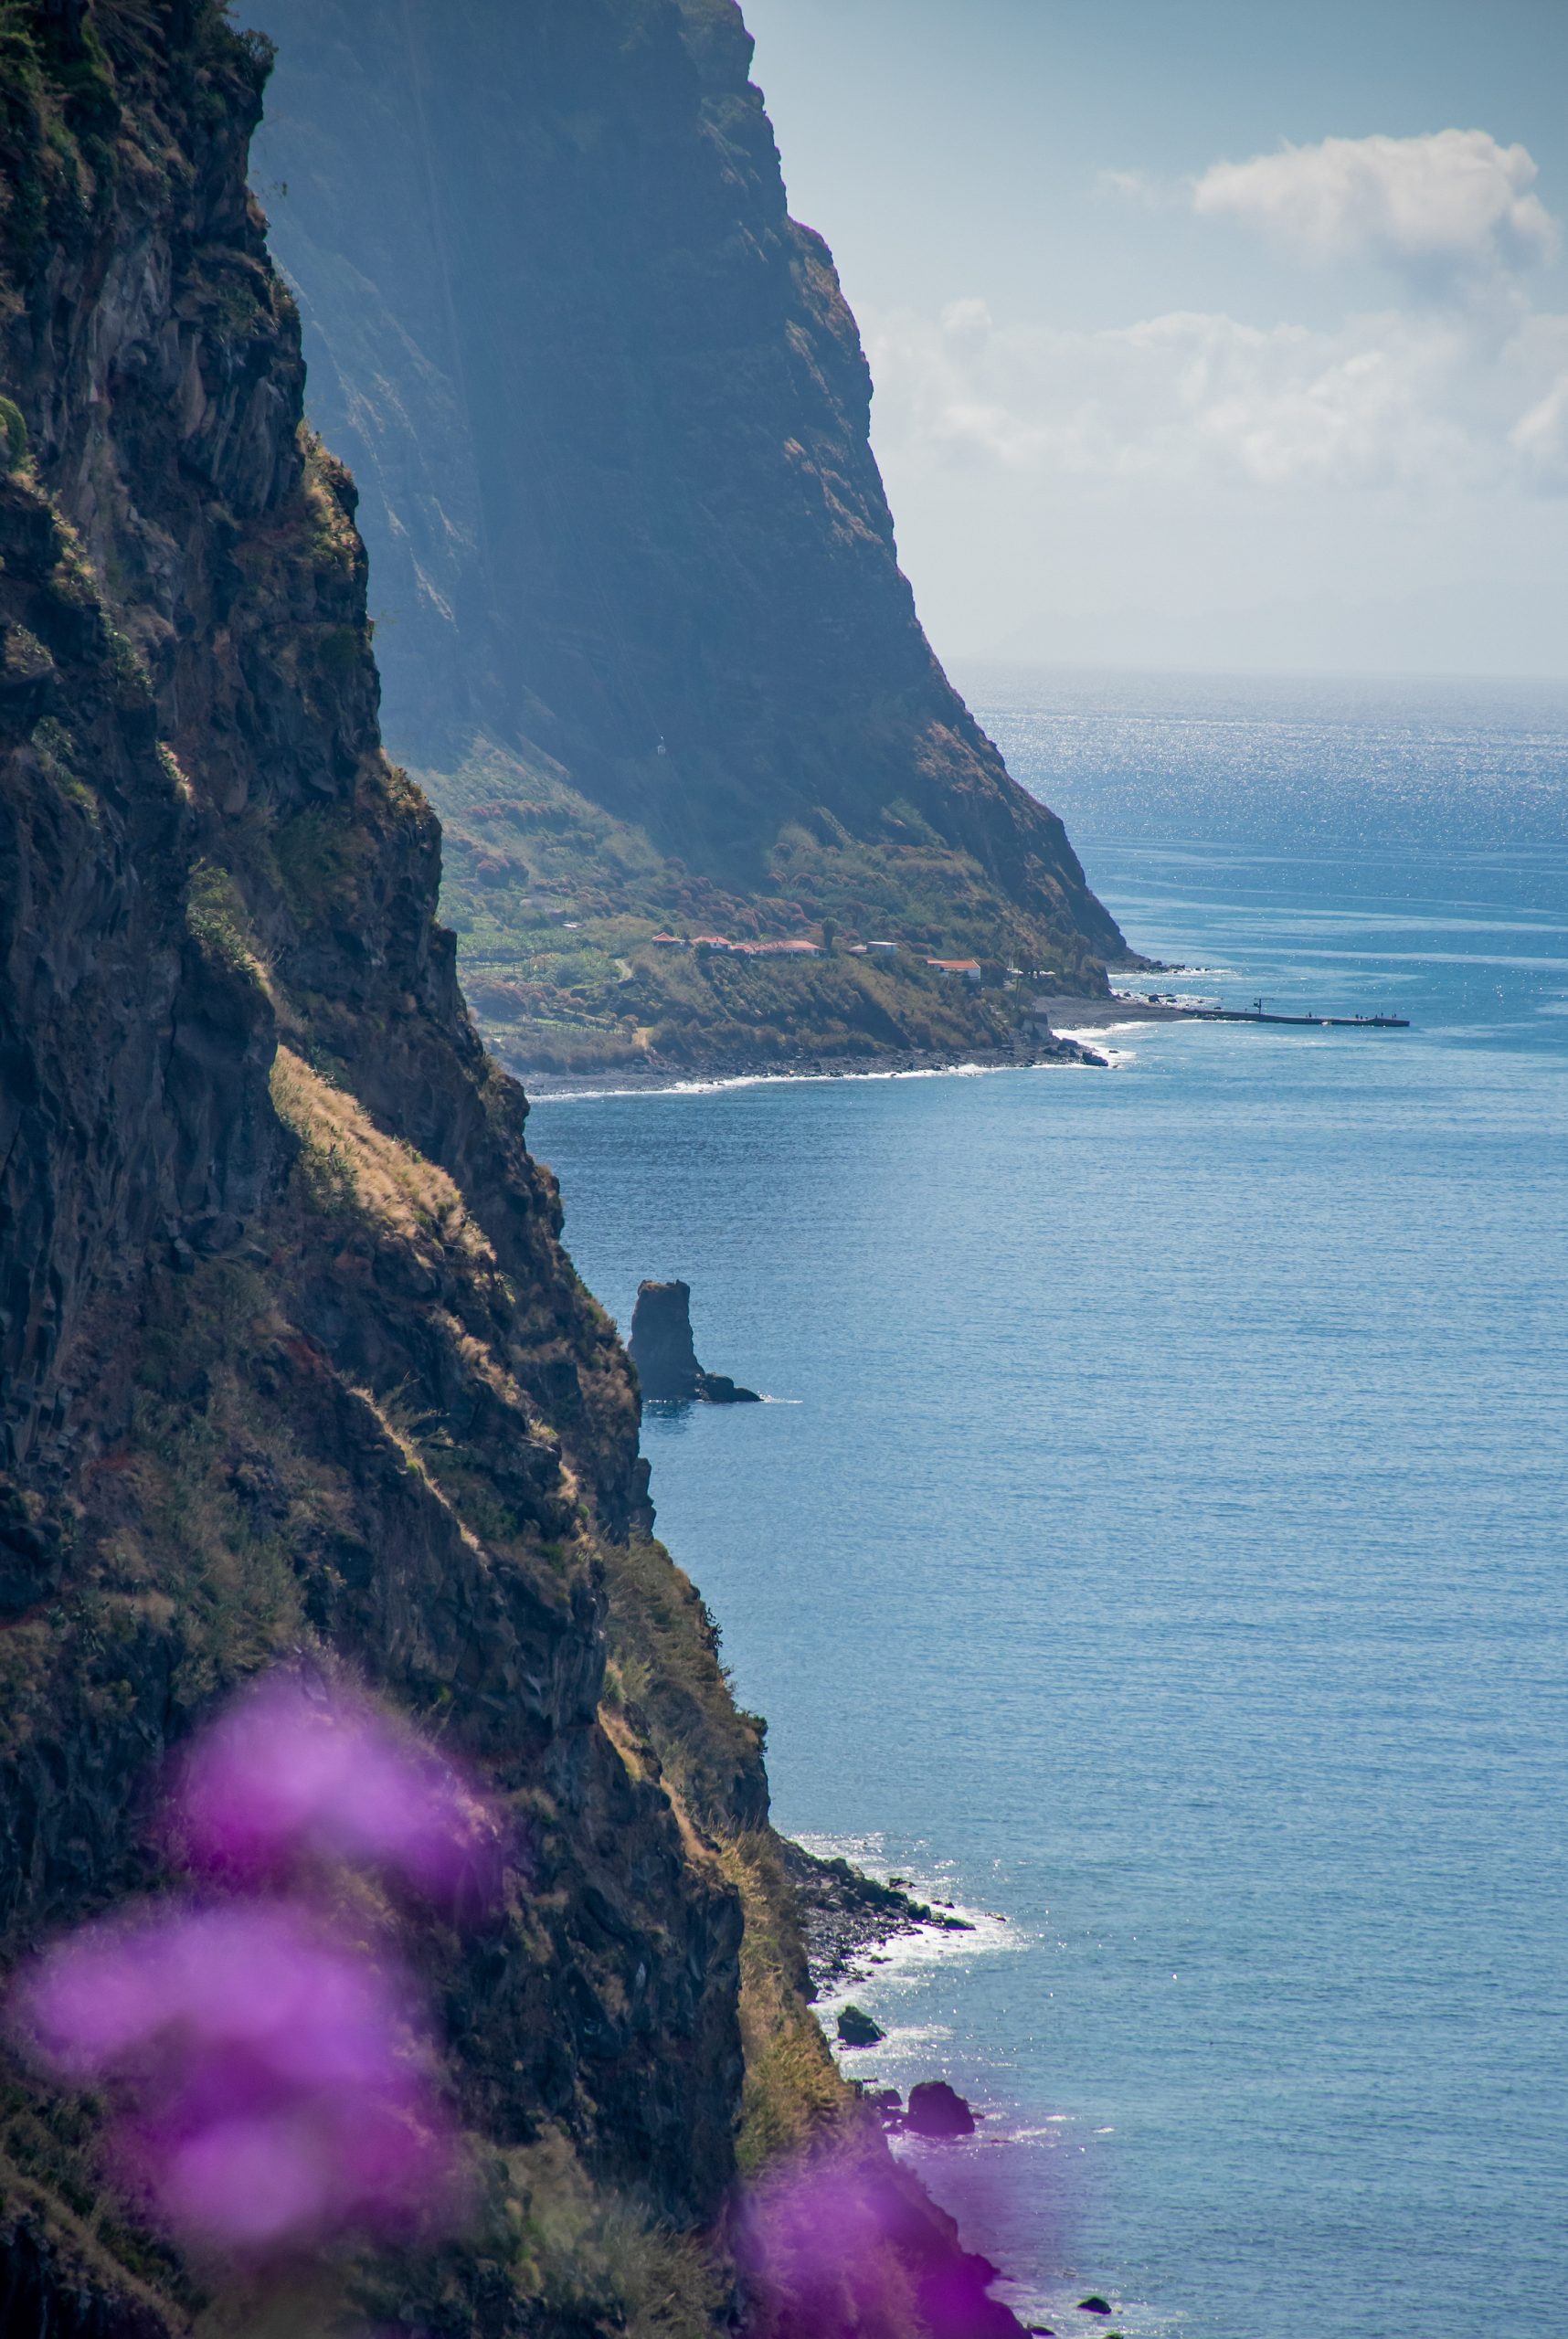 Het uitzicht op de prachtige kliffen langs de kust van Madeira